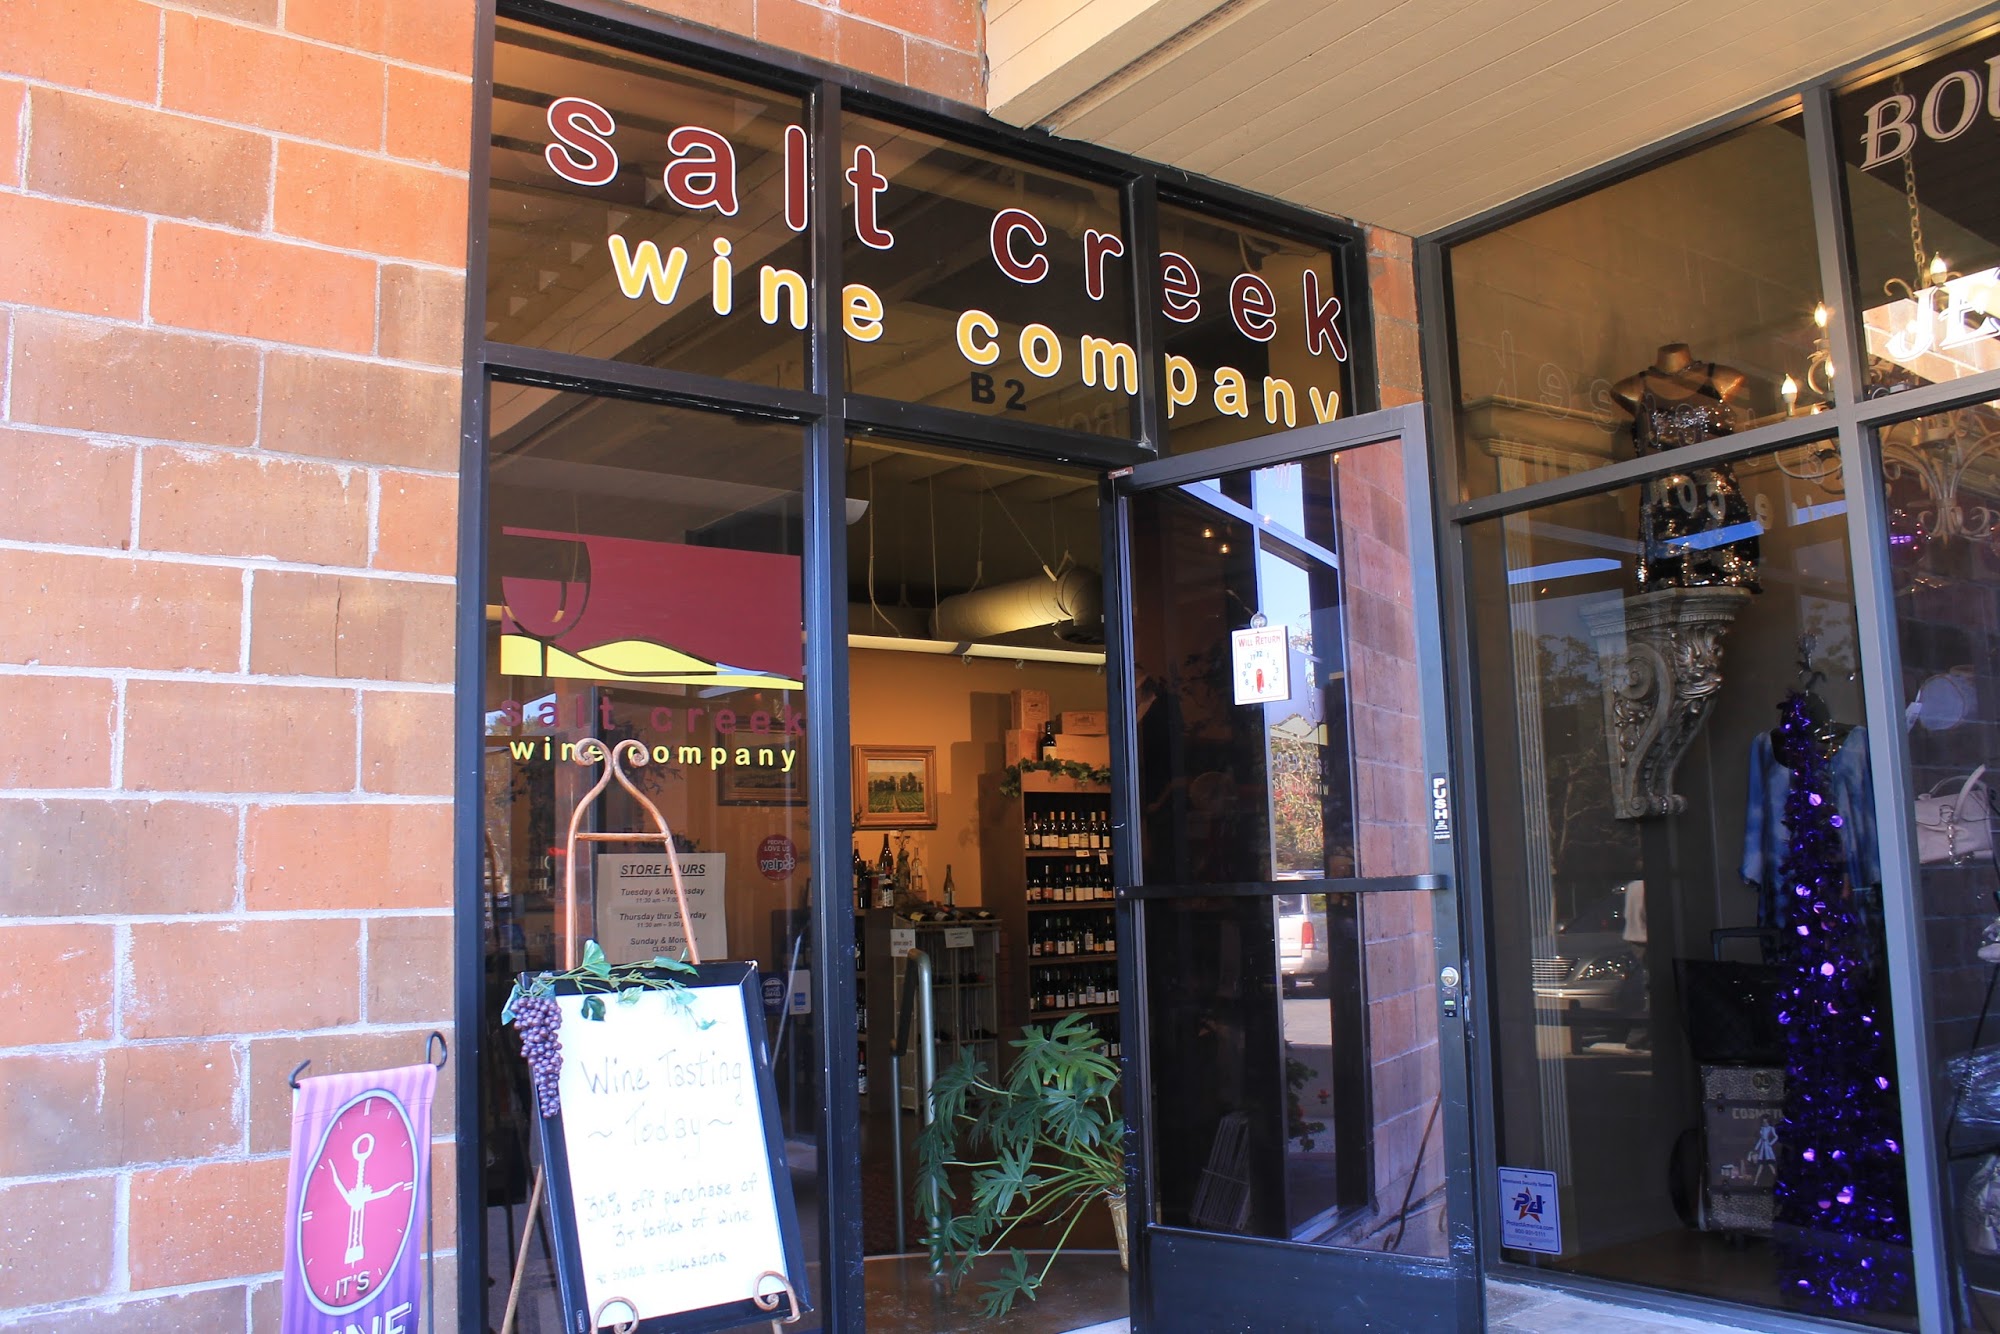 Salt Creek Wine Company